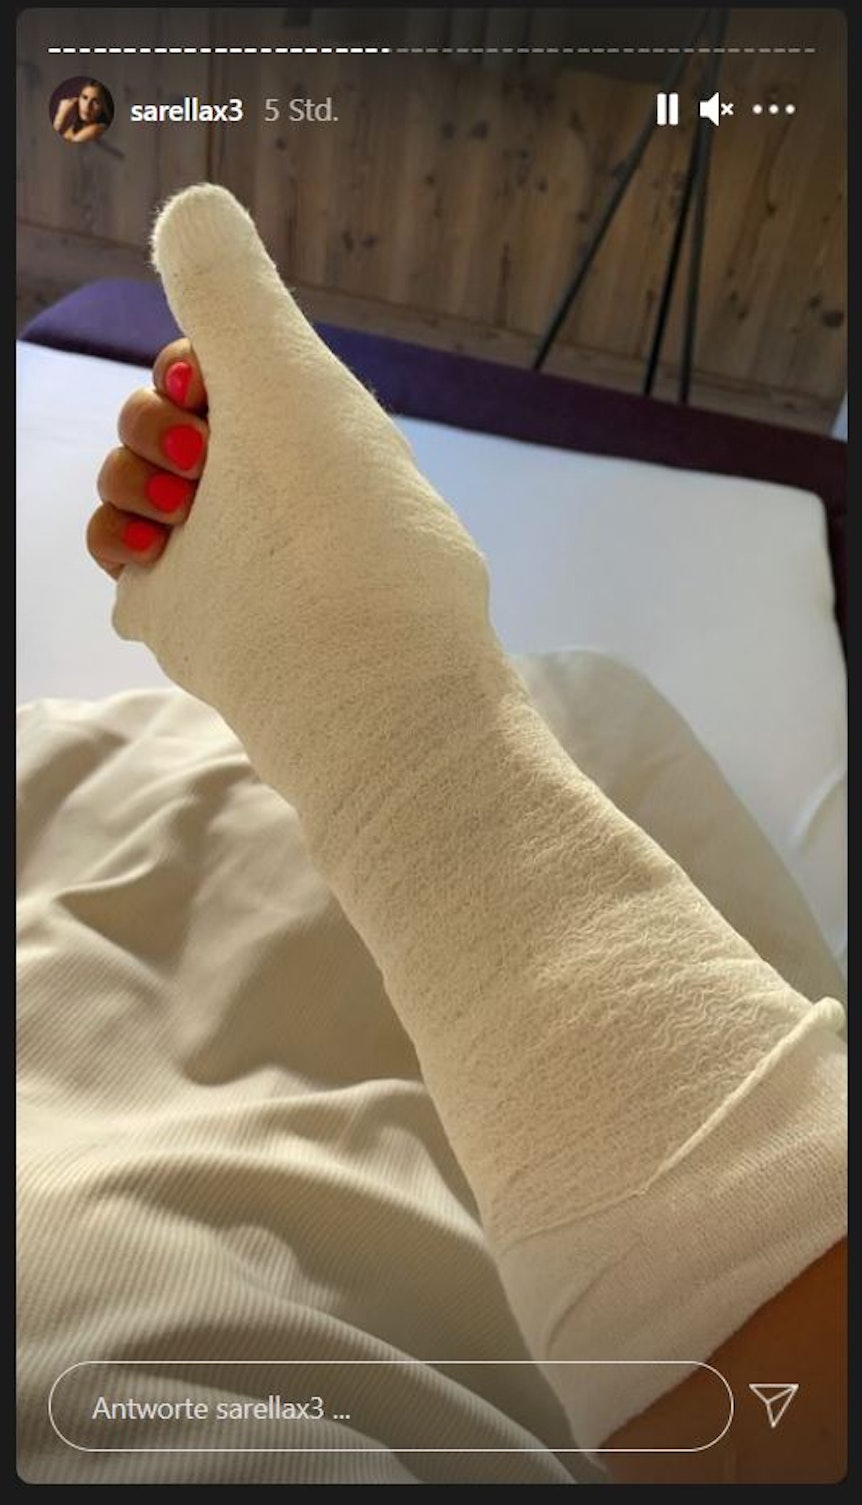 Sarah Engels hat sich im Uralub in Tirol das Kahnbein gebrochen. In ihrer Instagram-Story vom 29.7.2021 zeigt die Sängeirn ihren eingegipsten rechten Arm.